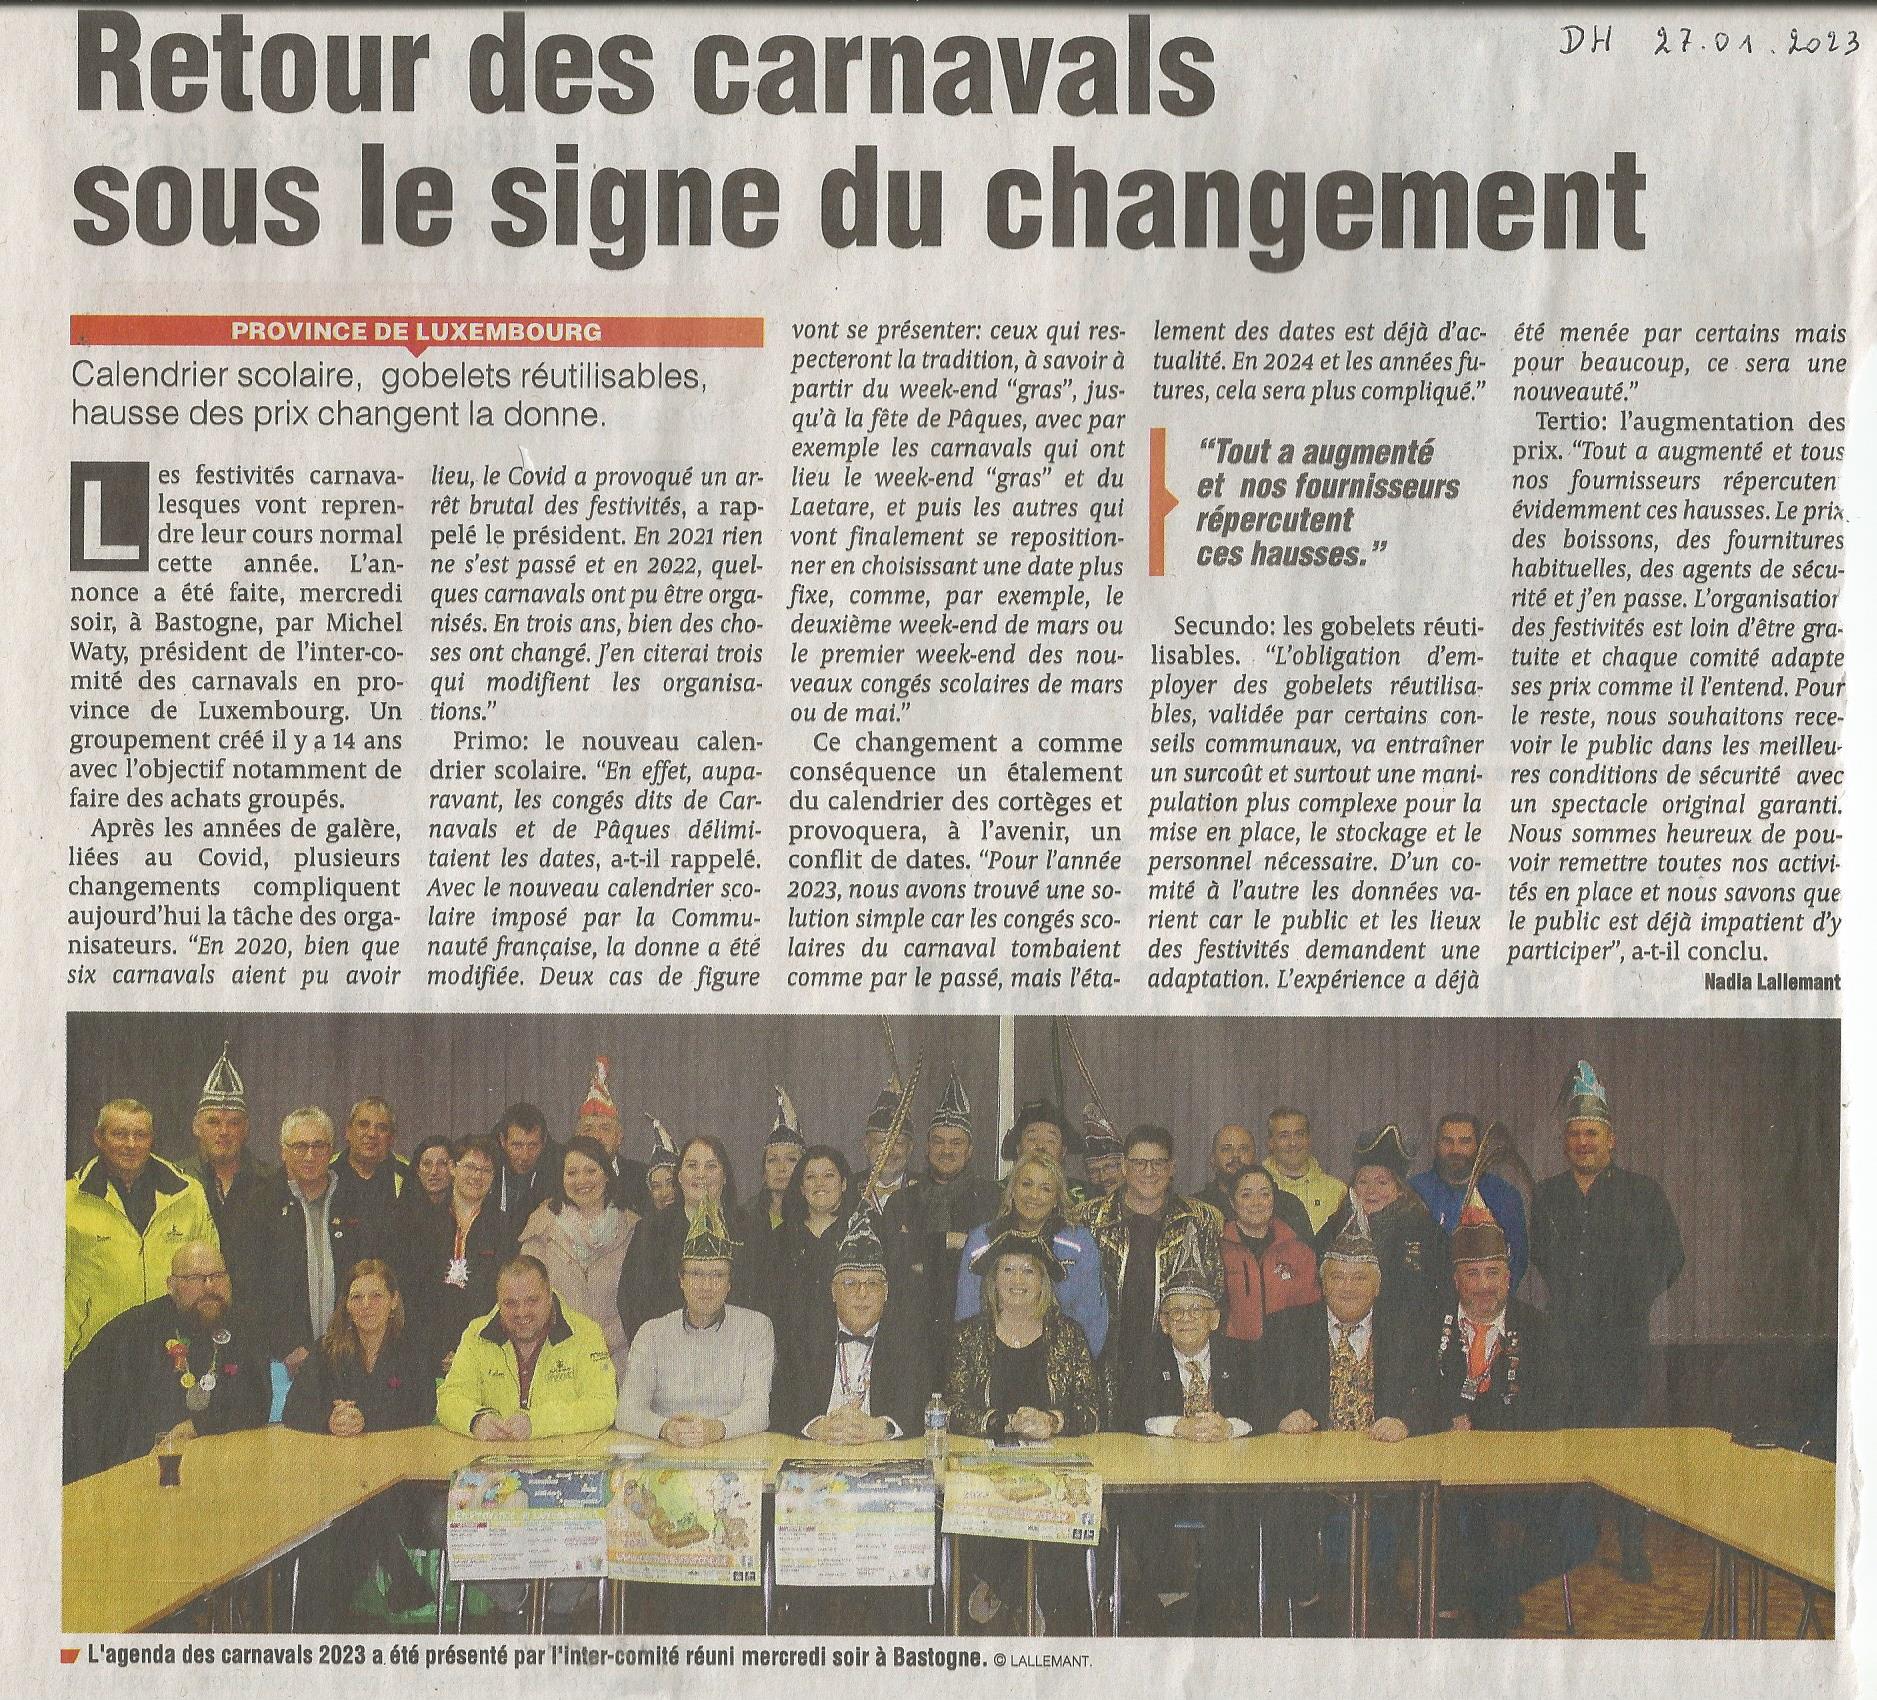 Carnaval de Martelange, Revue de presse de Jérôme 1er